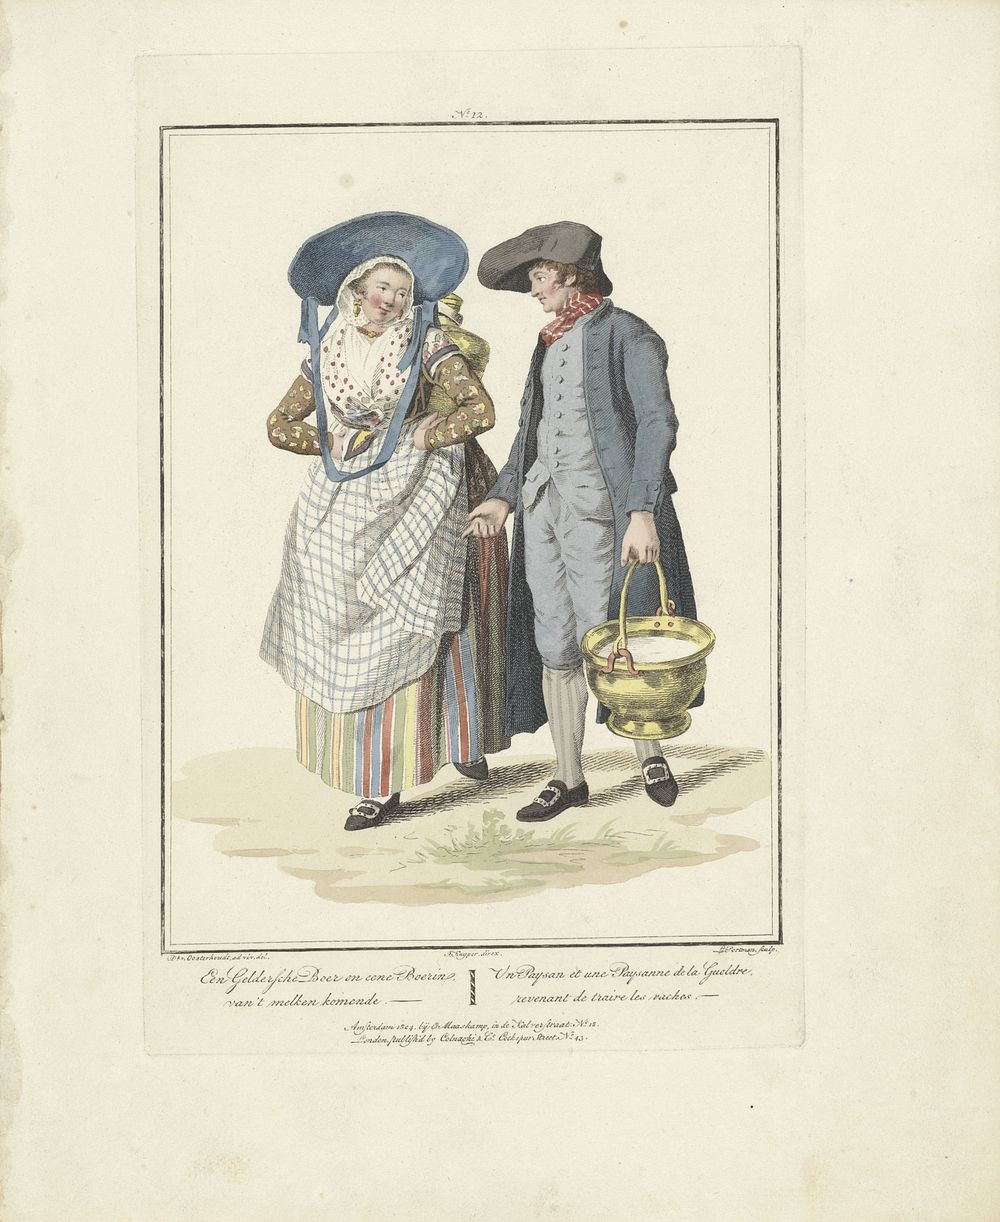 Gelderse boer en boerin in klederdracht (1803 - 1807) by Ludwig Gottlieb Portman, Jacques Kuyper, Dirk van Oosterhoudt…